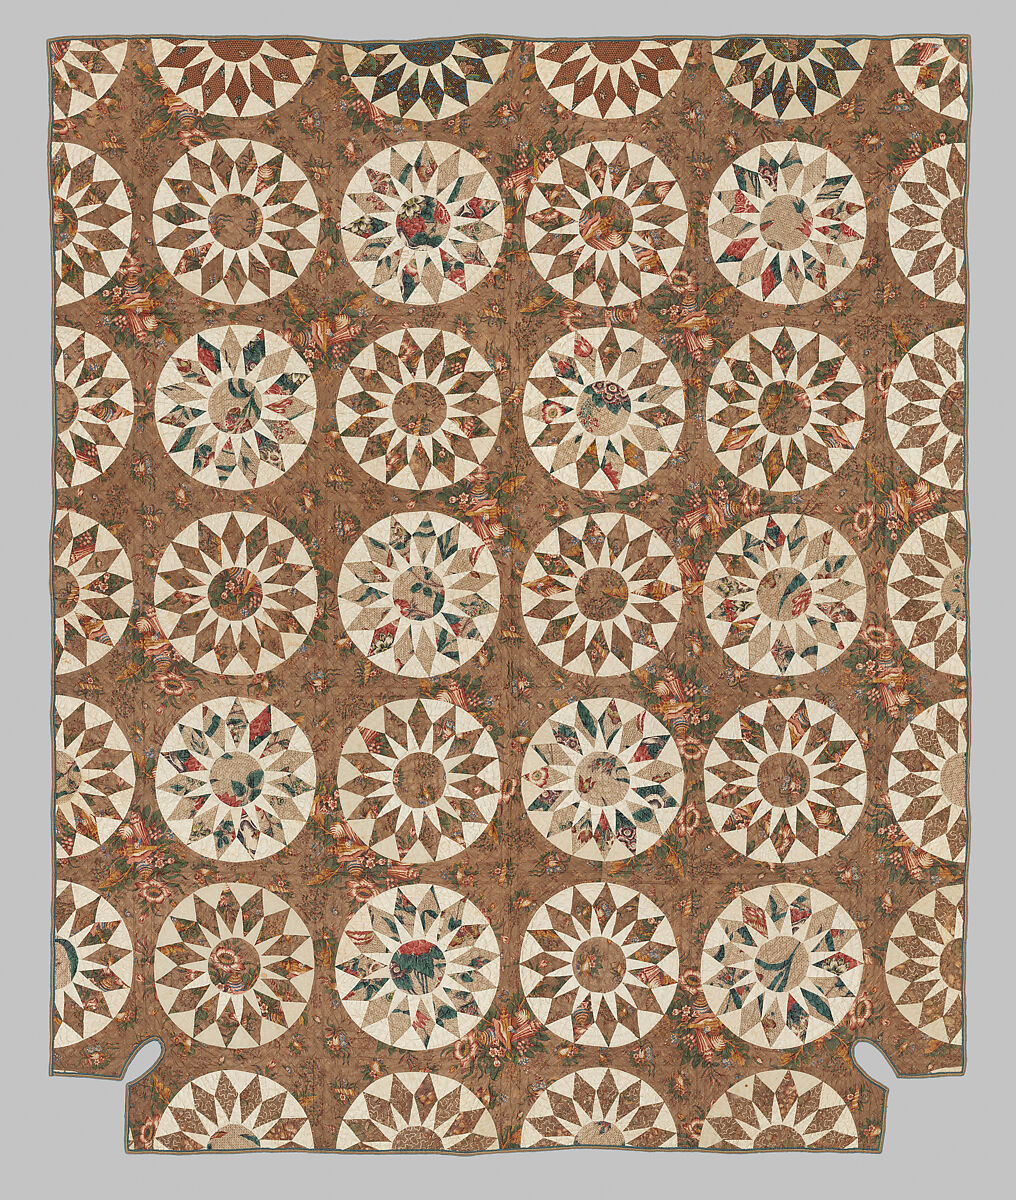 Sunburst Quilt, Artist Unknown  , American, Cotton, American 